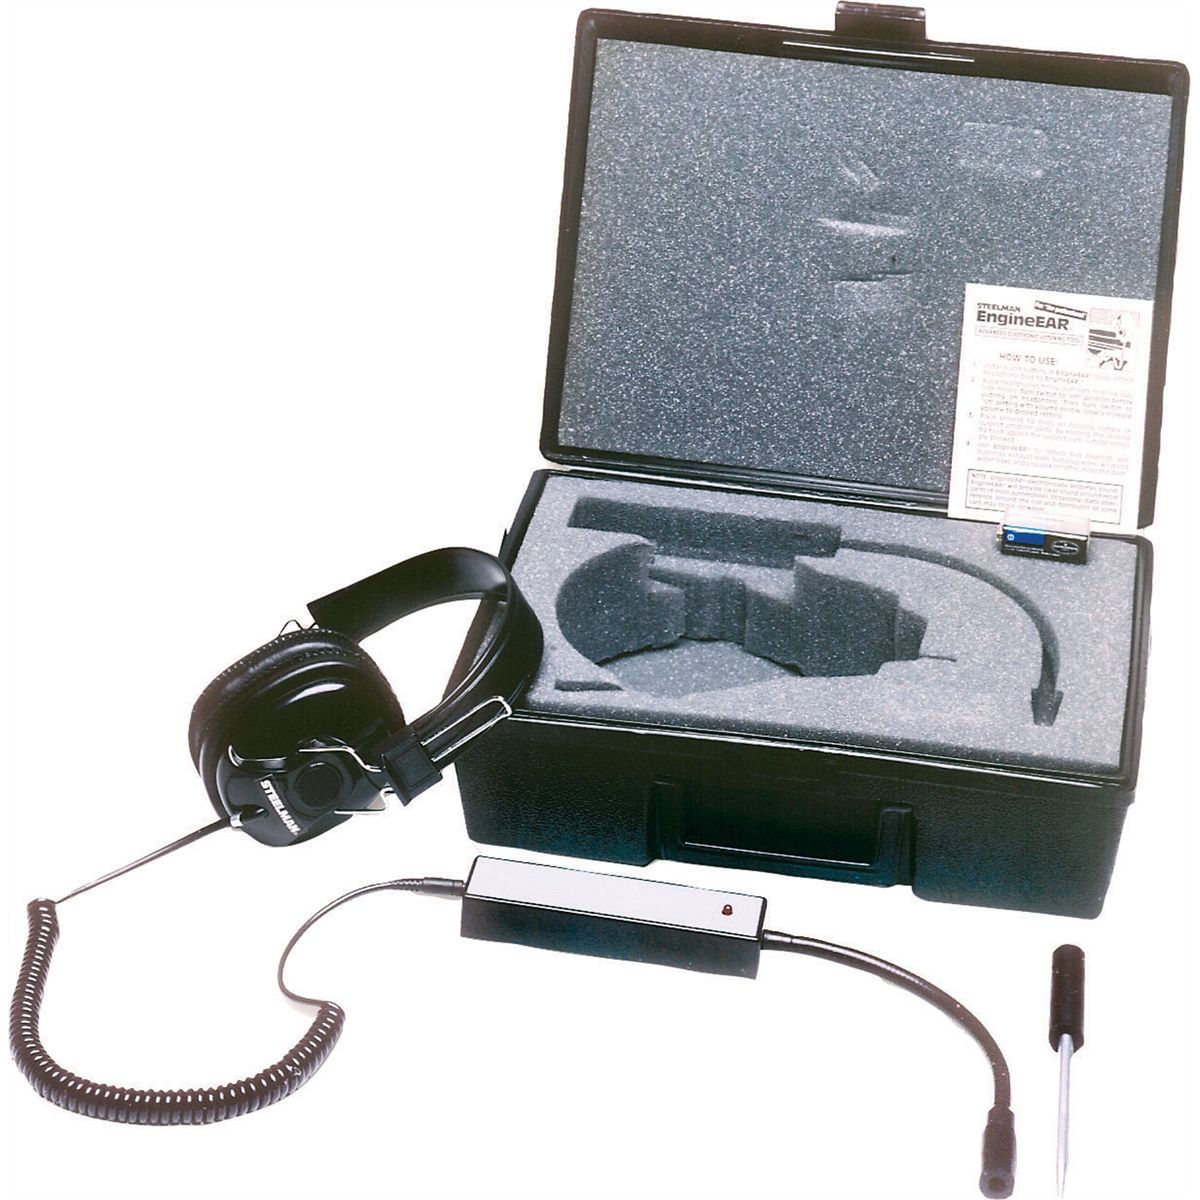 Engine Ear Electronic Stethoscope